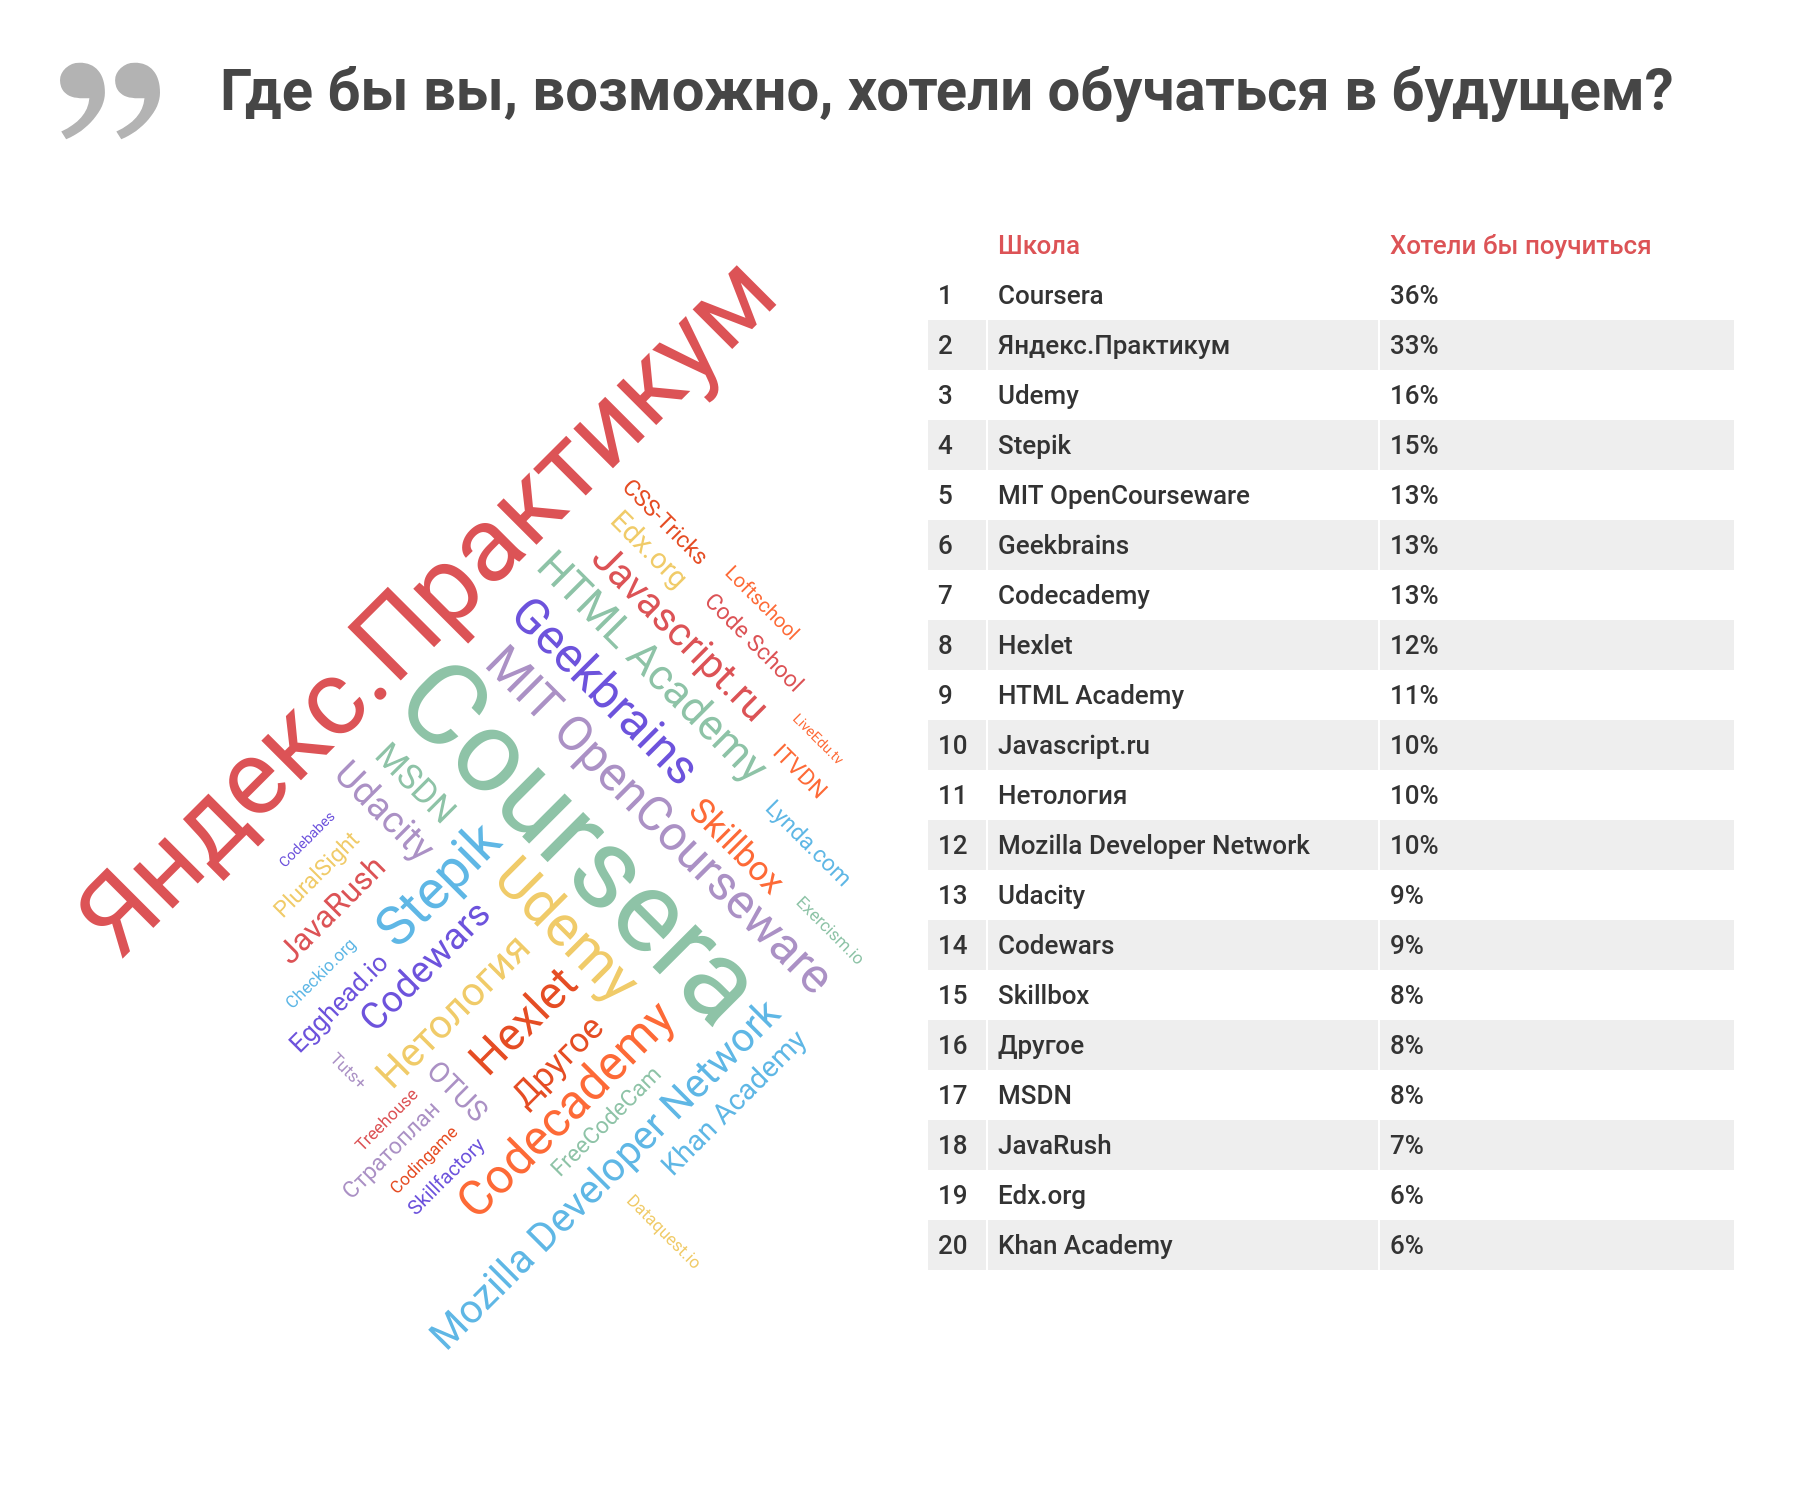 Рейтинг школ департамента образования москвы